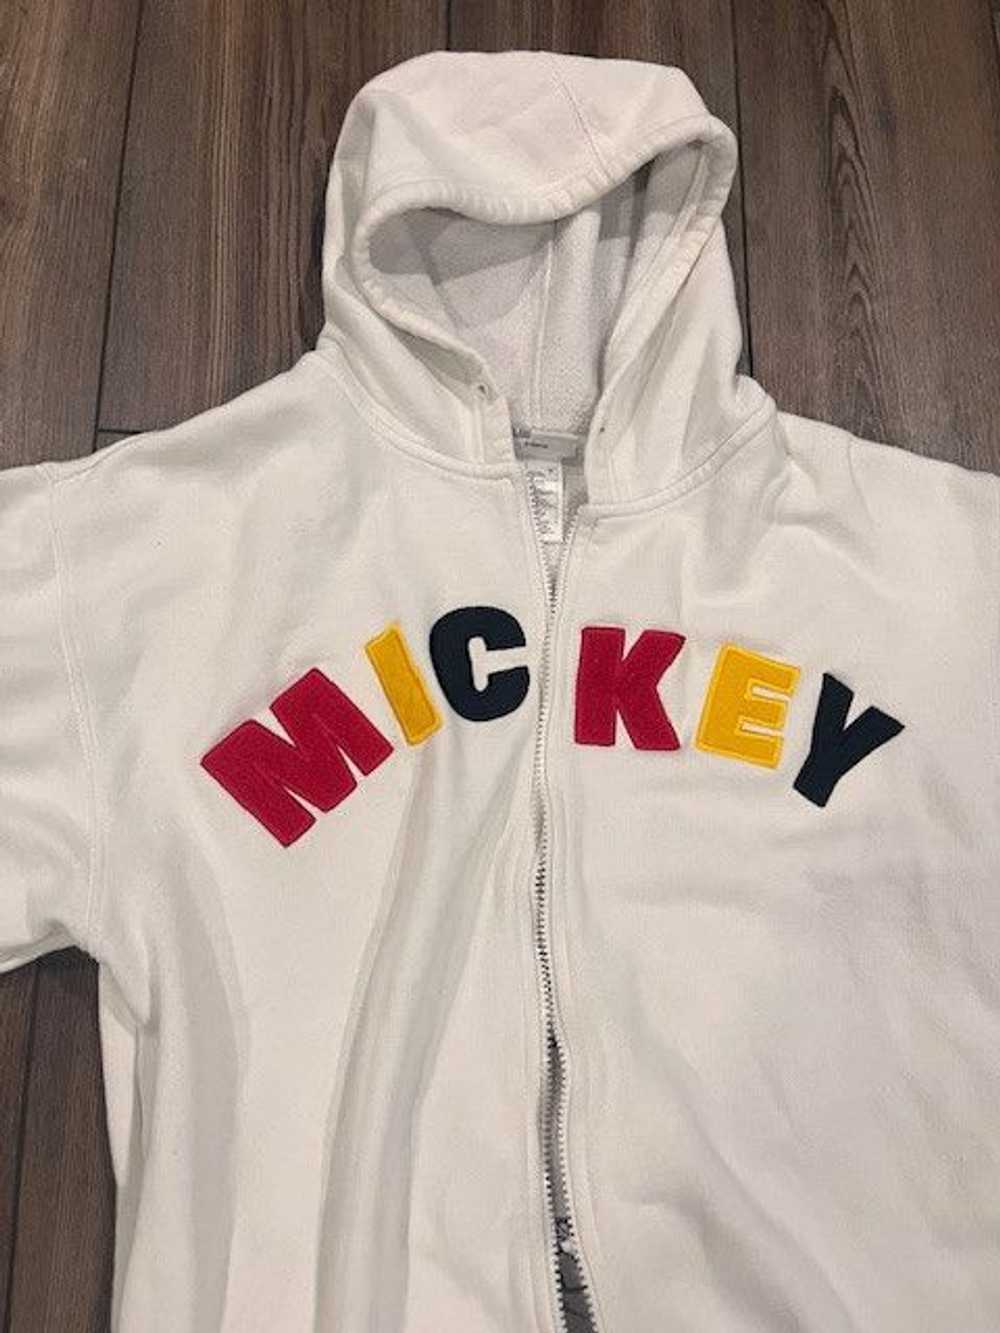 Disney Mickey Mouse White Jacket - image 3